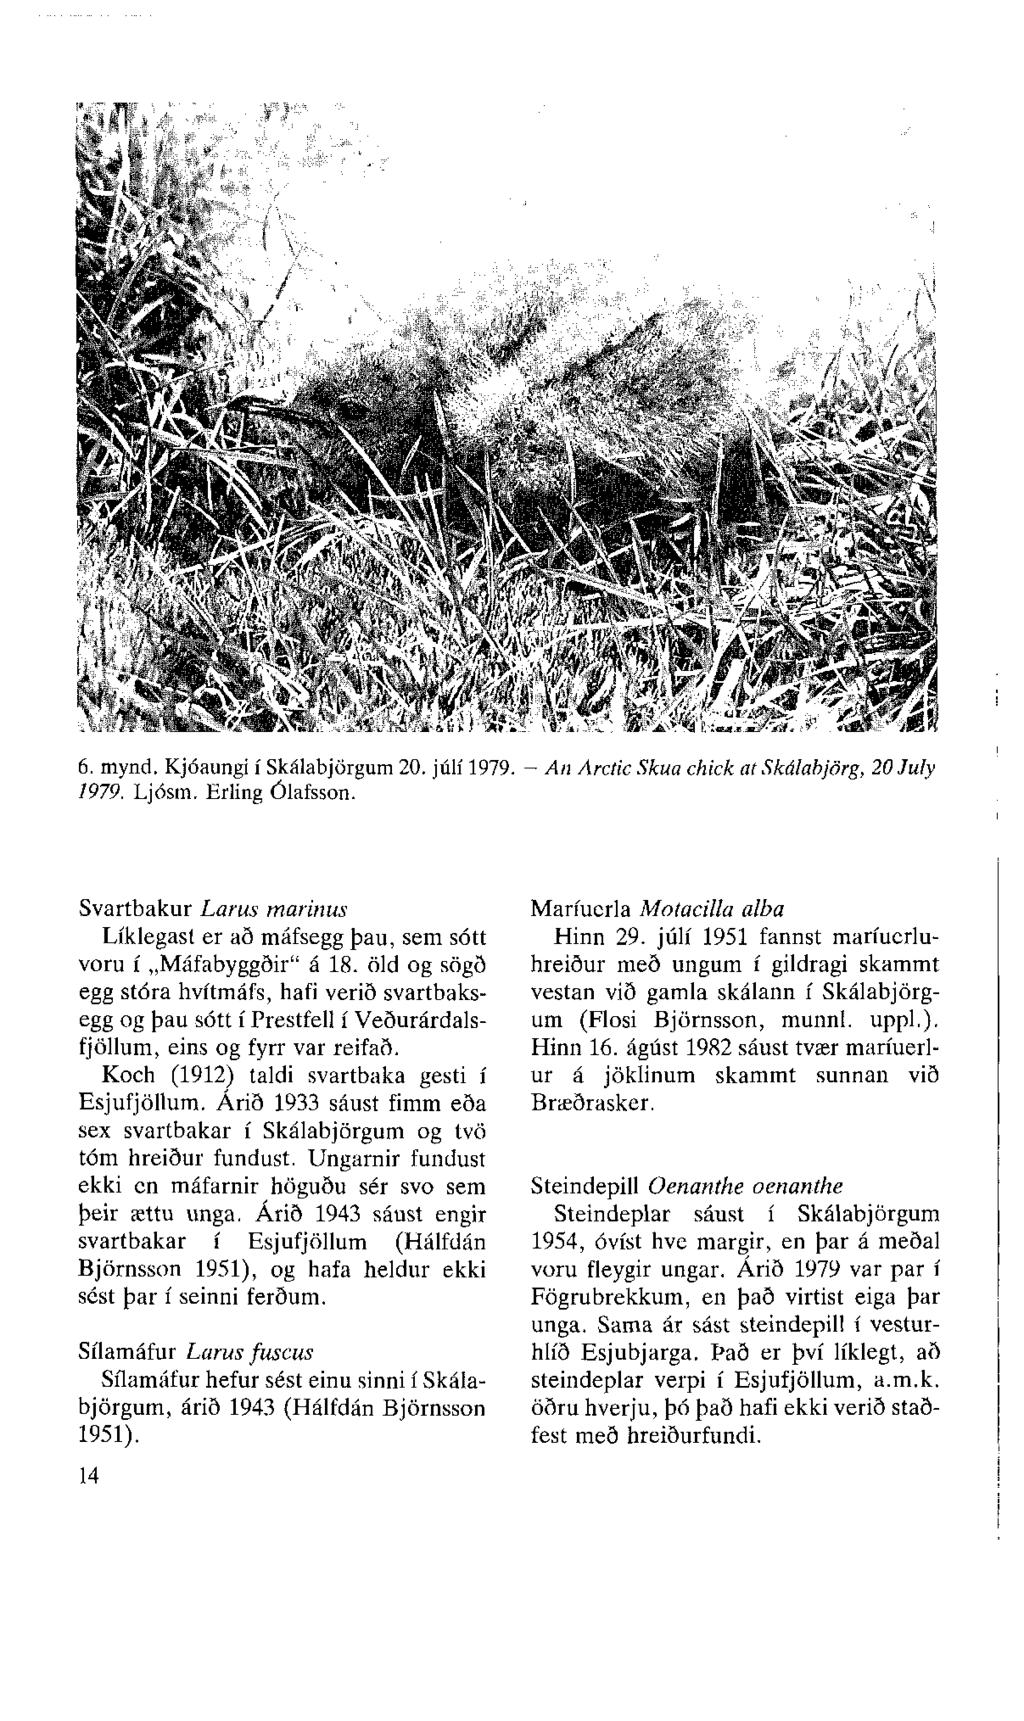 6. mynd. Kjóaungi í Skálabjörgum 20. júlí 1979. - An Arctic Skua chick at Skálabjörg, 20 July 1979. Ljósm. Erling Ólafsson.